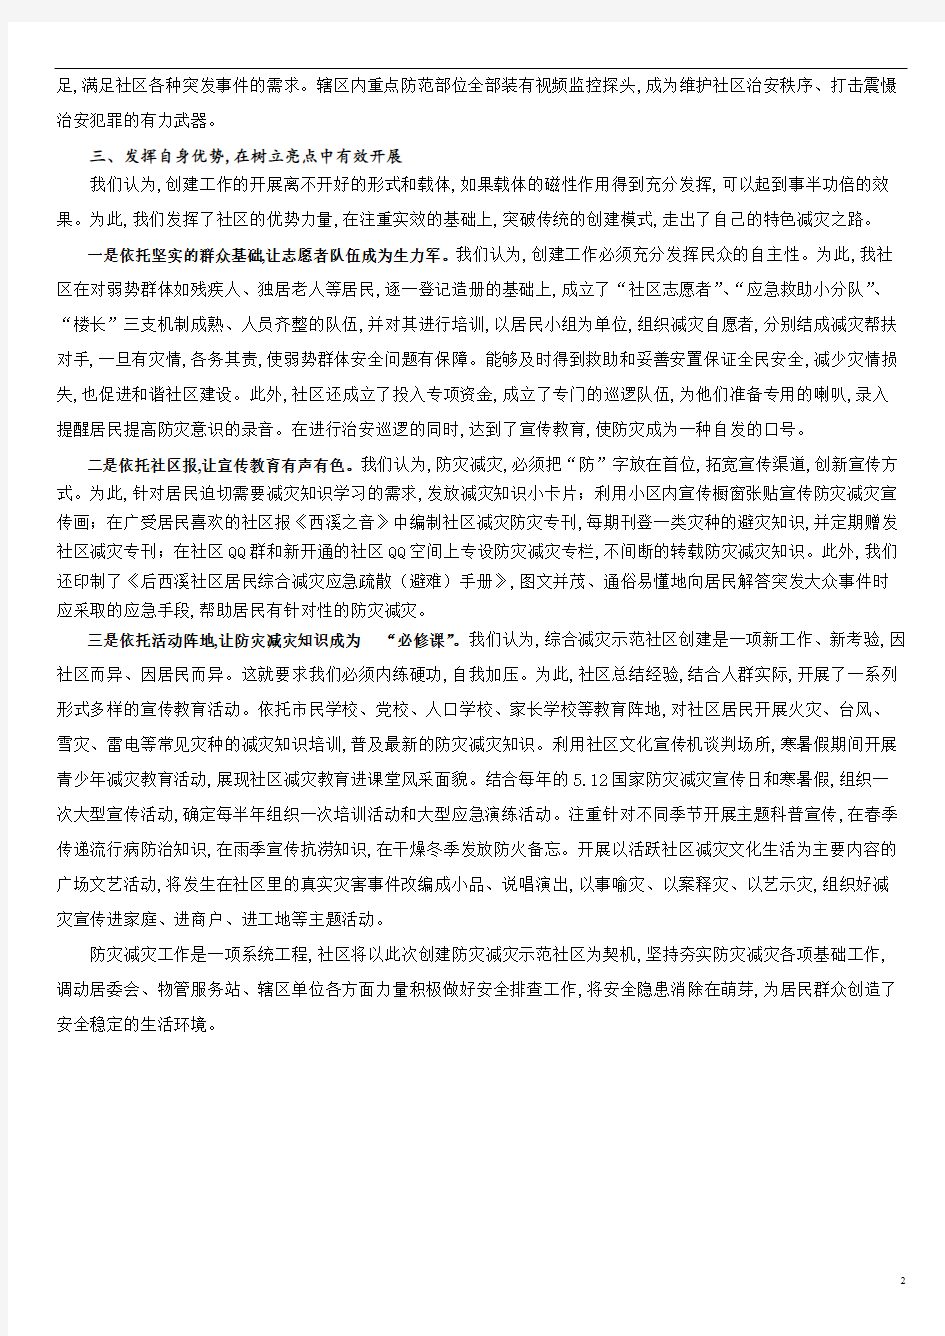 后西溪社区防灾减灾汇报材料_邱一丹[1].pdf